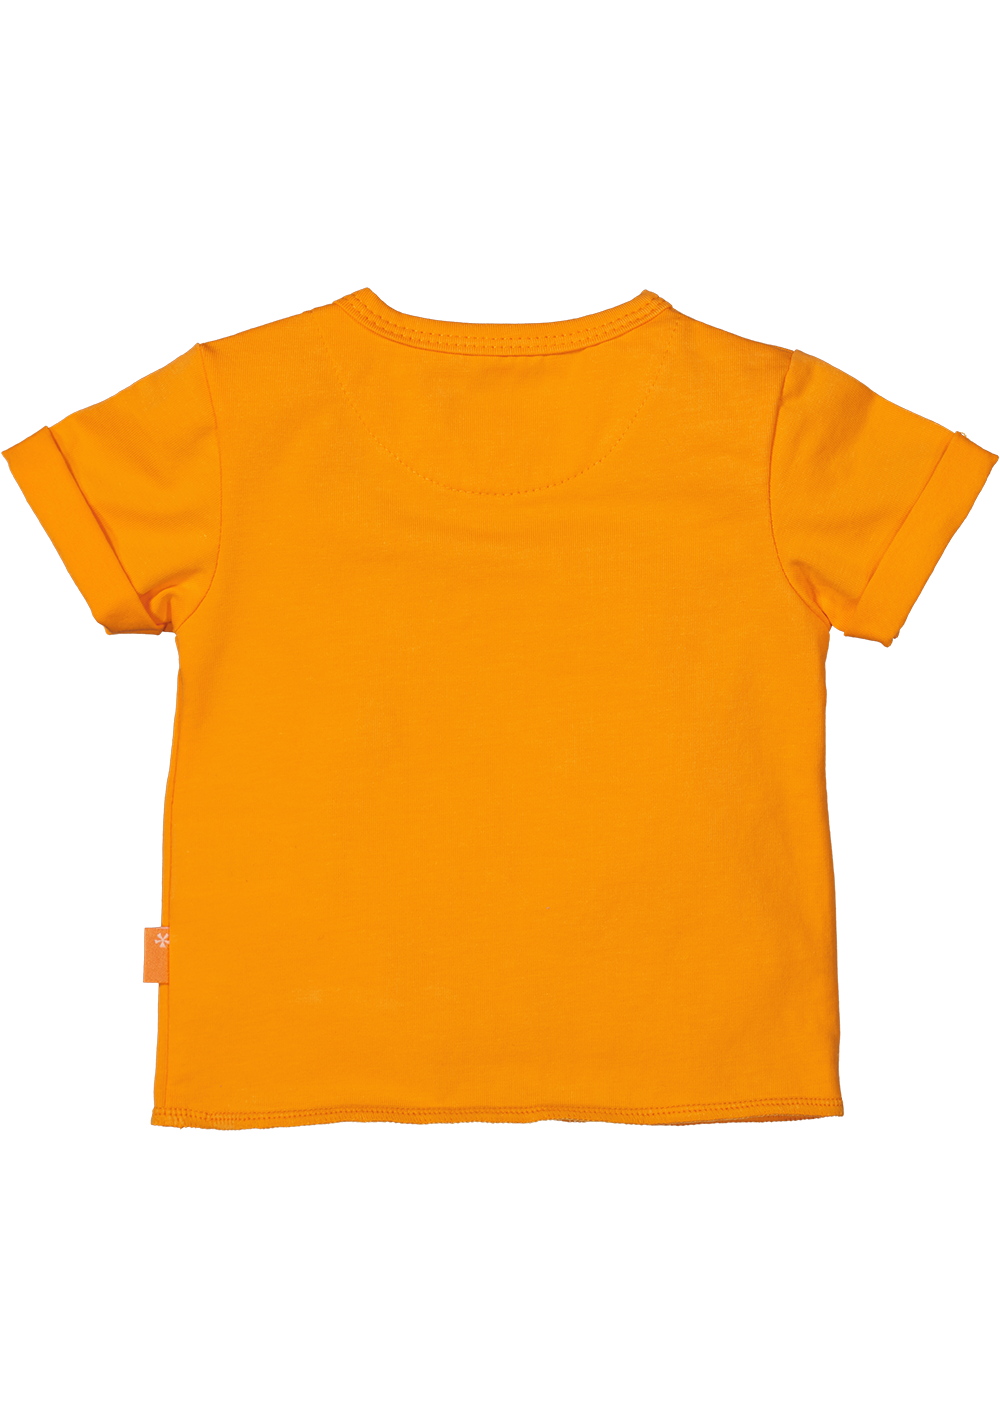 BESS S24 l2 Shirt sh.sl. Slub Orange Paradise 241076-075